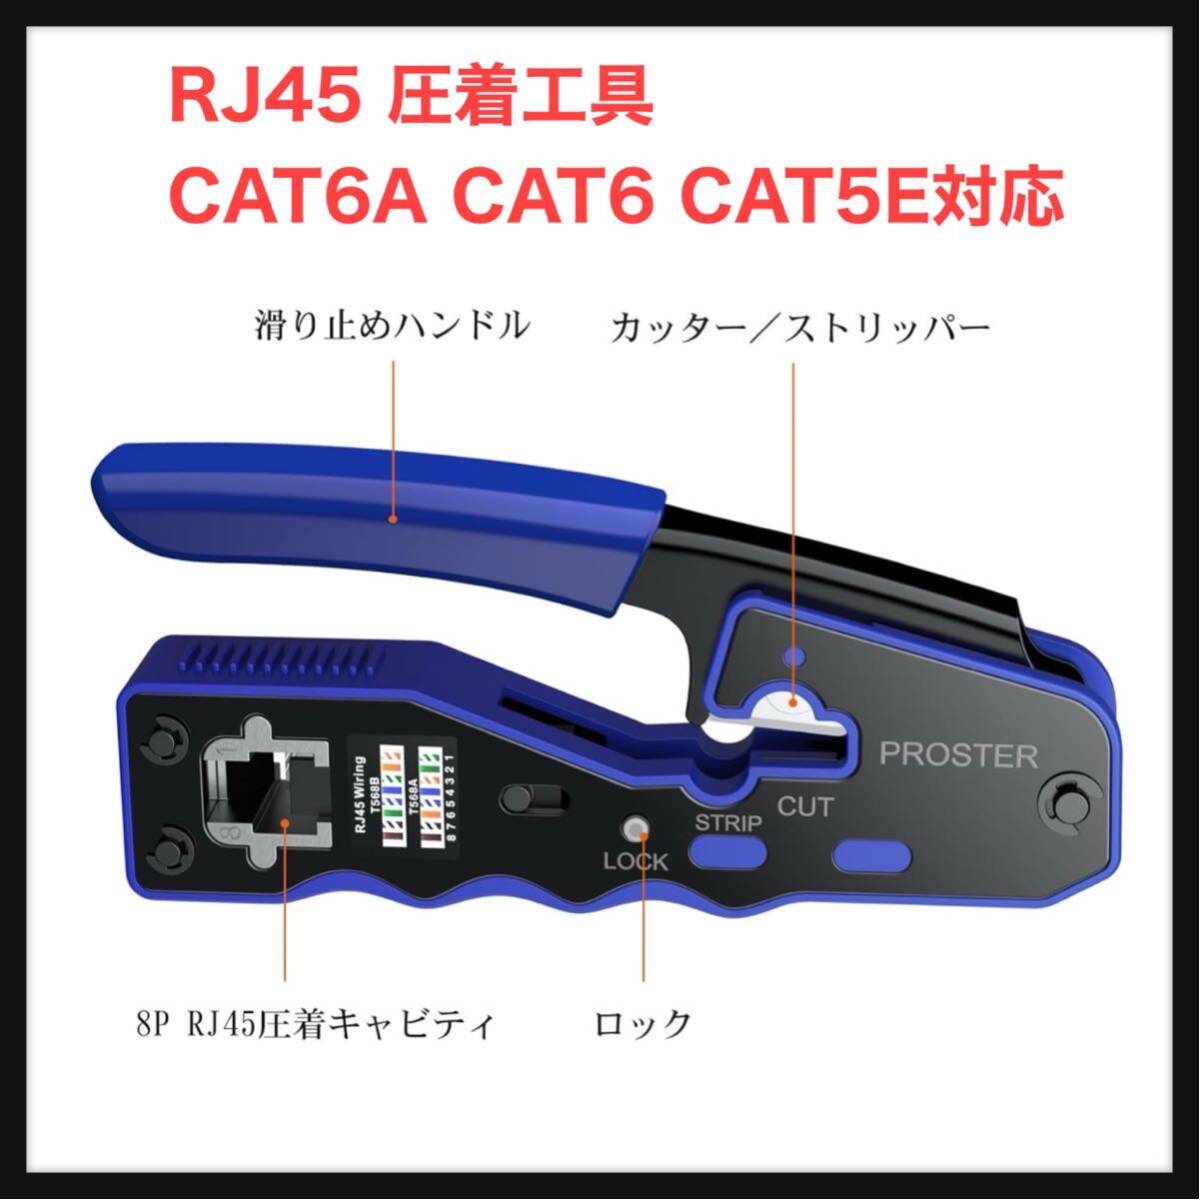 【訳あり】Proster ★RJ45 圧着工具 CAT6A CAT6 CAT5E対応 貫通型 カシメ工具 圧着ペンチ の画像1